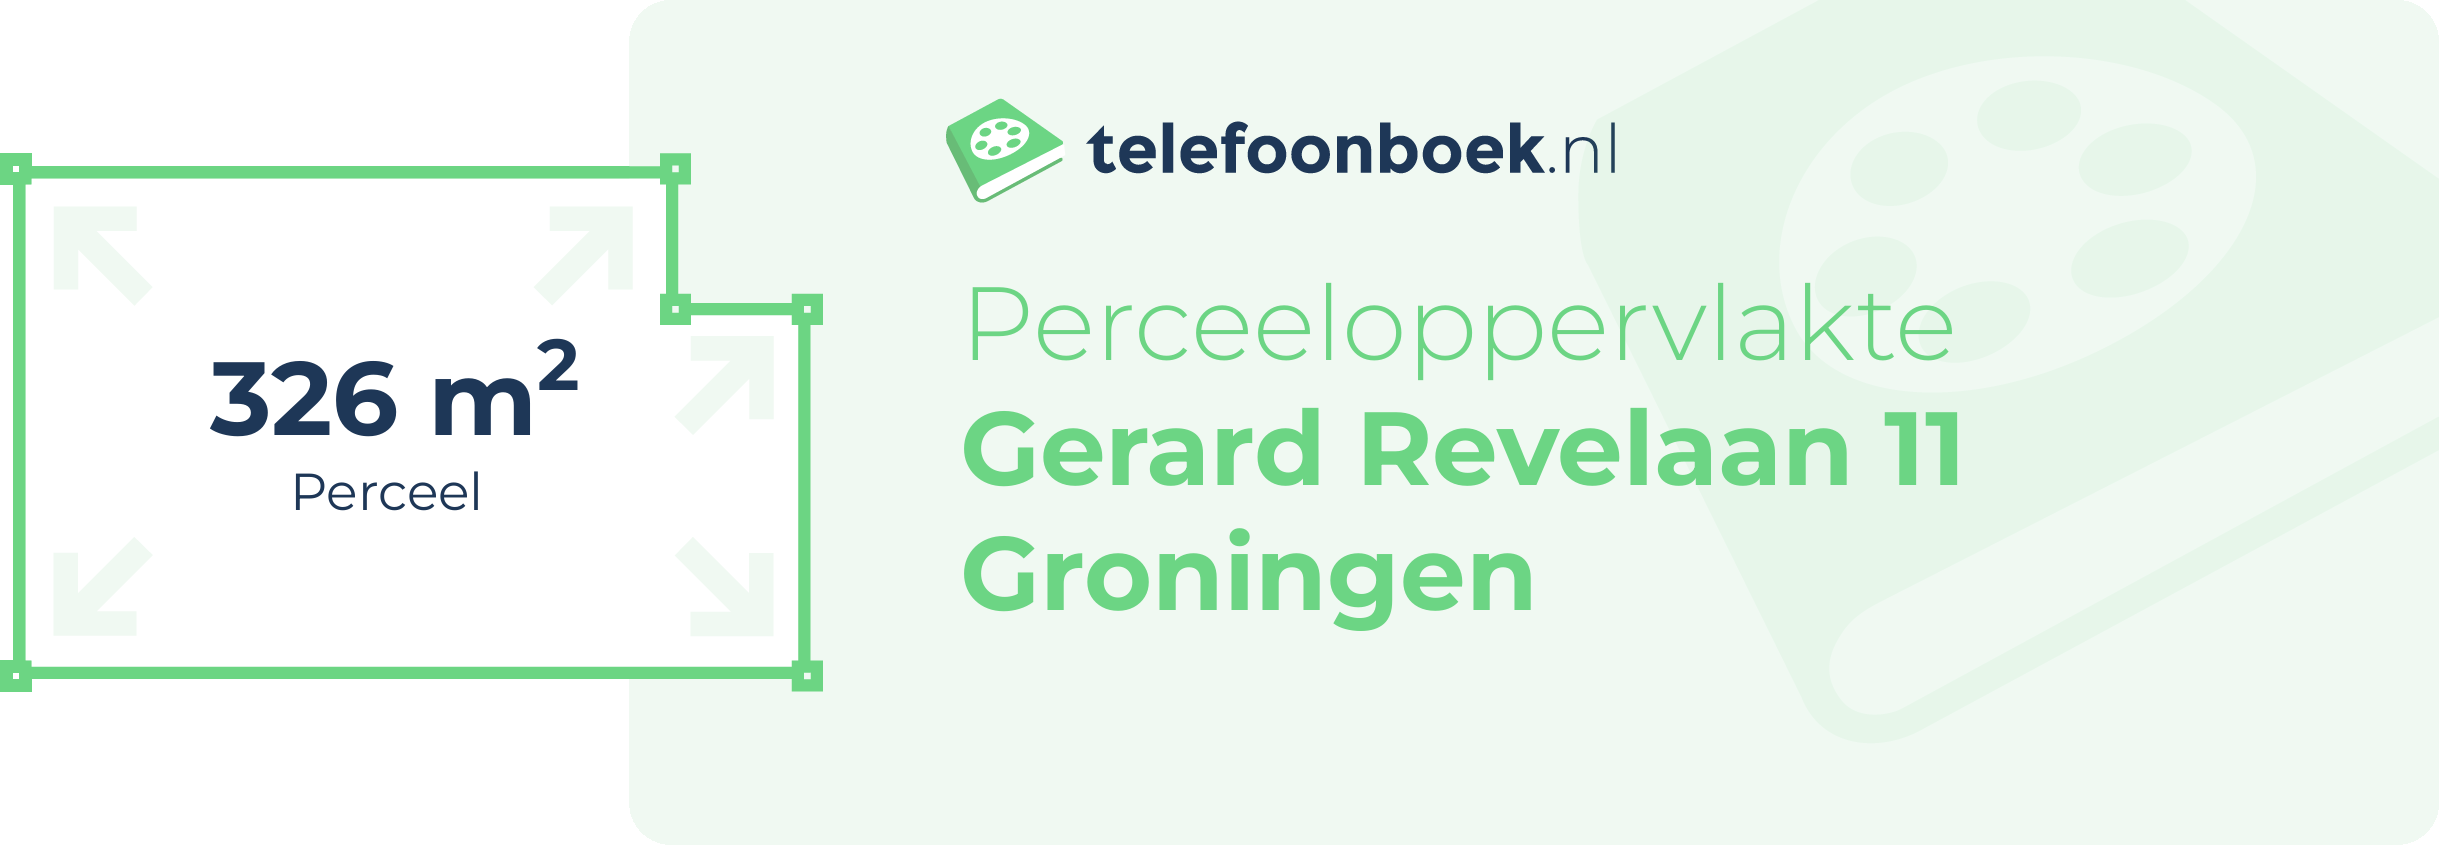 Perceeloppervlakte Gerard Revelaan 11 Groningen